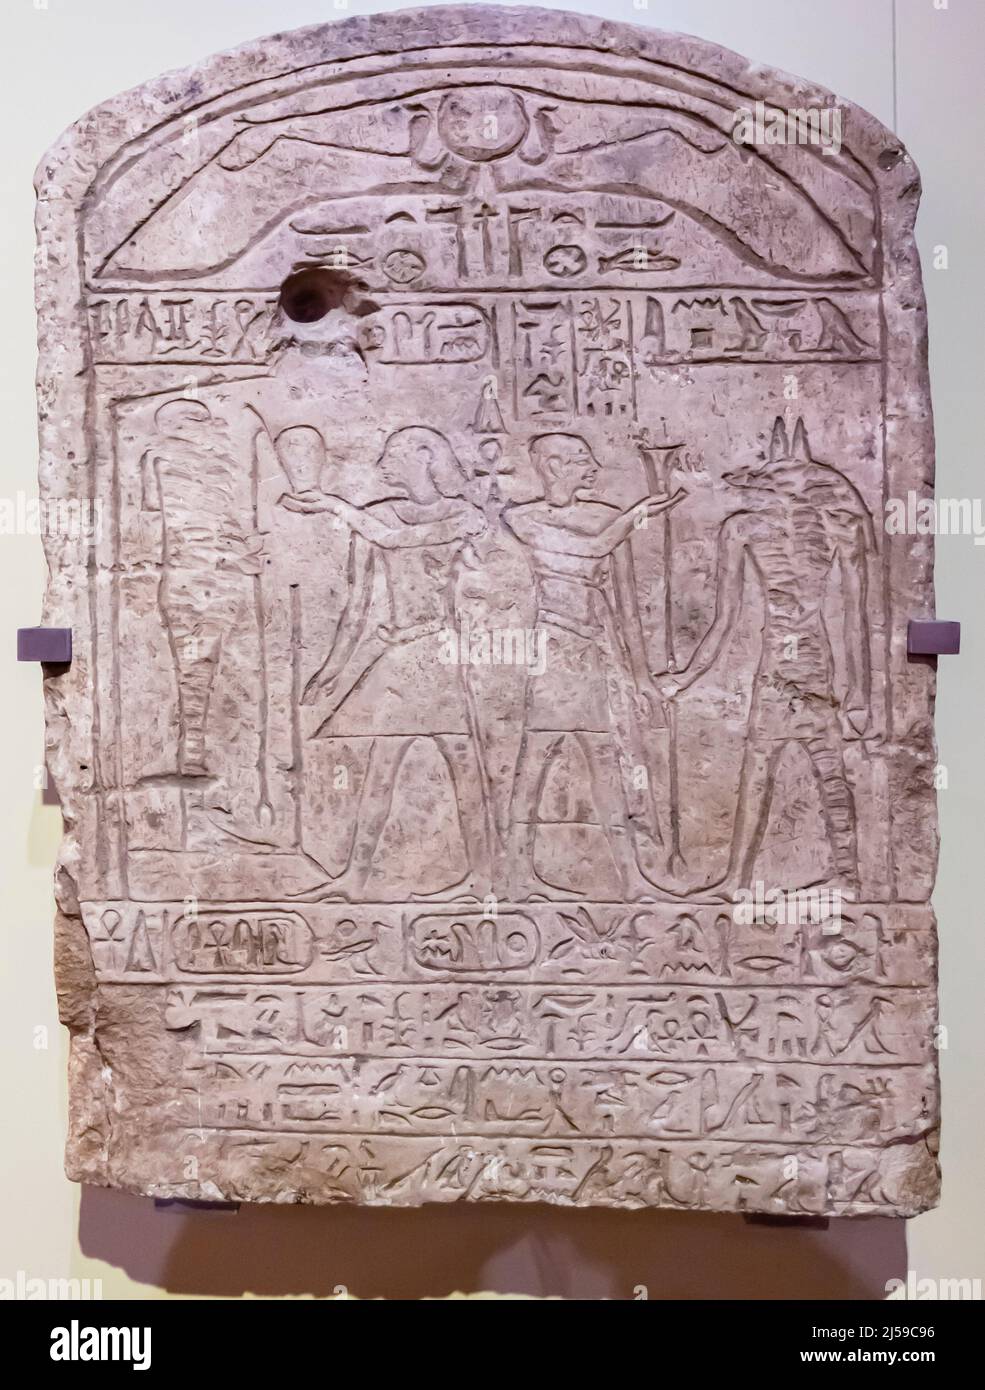 Antico Egitto - Stela di re Seankhipta - calcare - periodo 2nd int - 13th - 14th dinastie -1785 - 1633 AC. Raffigurato Ptah, Anubis, Nebsumenu. Foto Stock